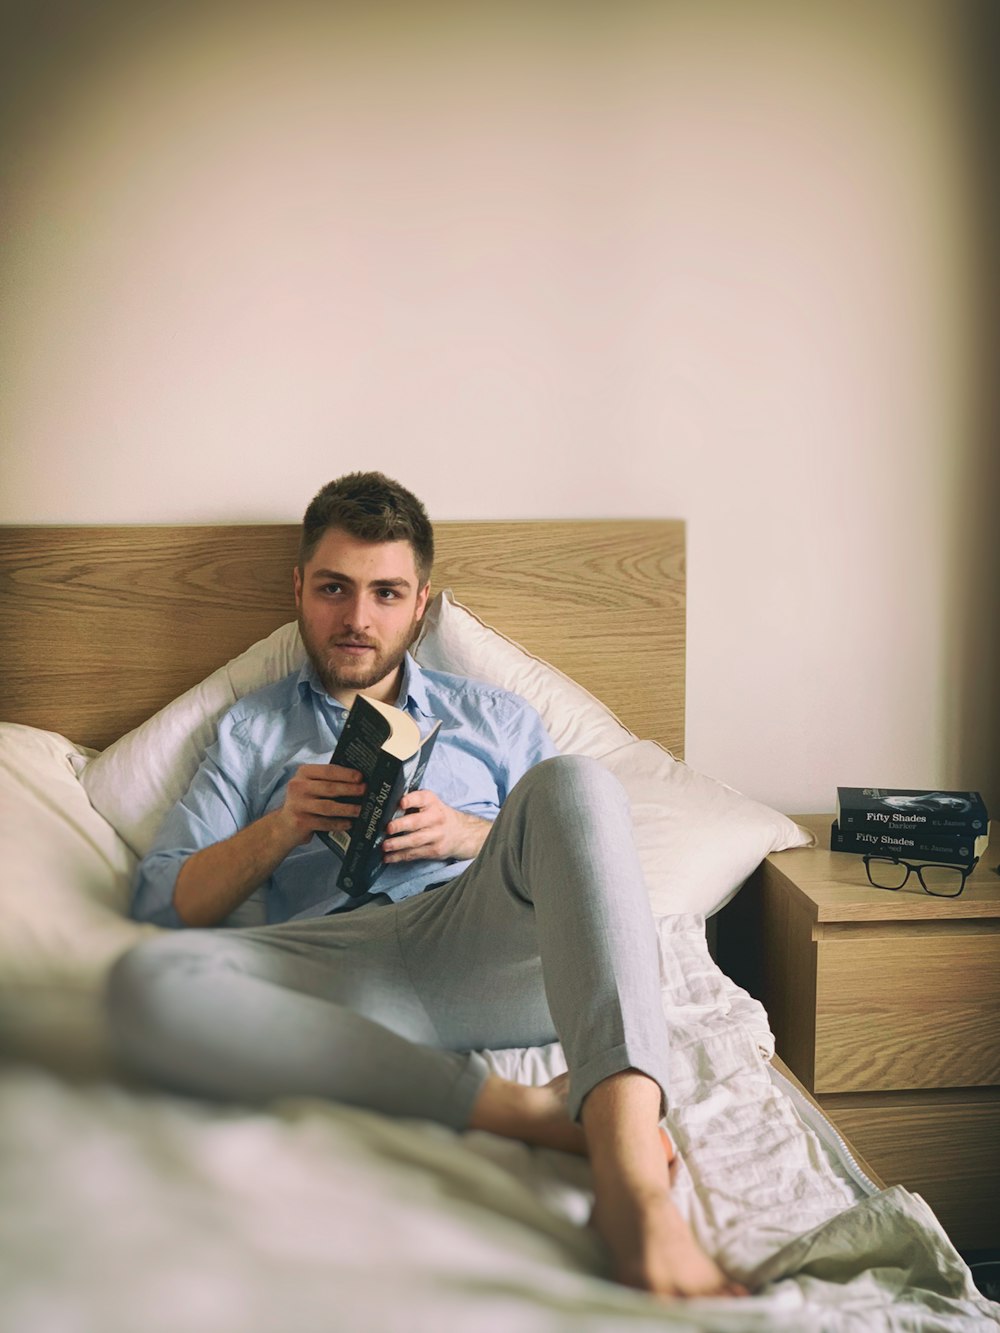 Foto hombre acostado en la cama – Imagen Enfocar gratis en Unsplash